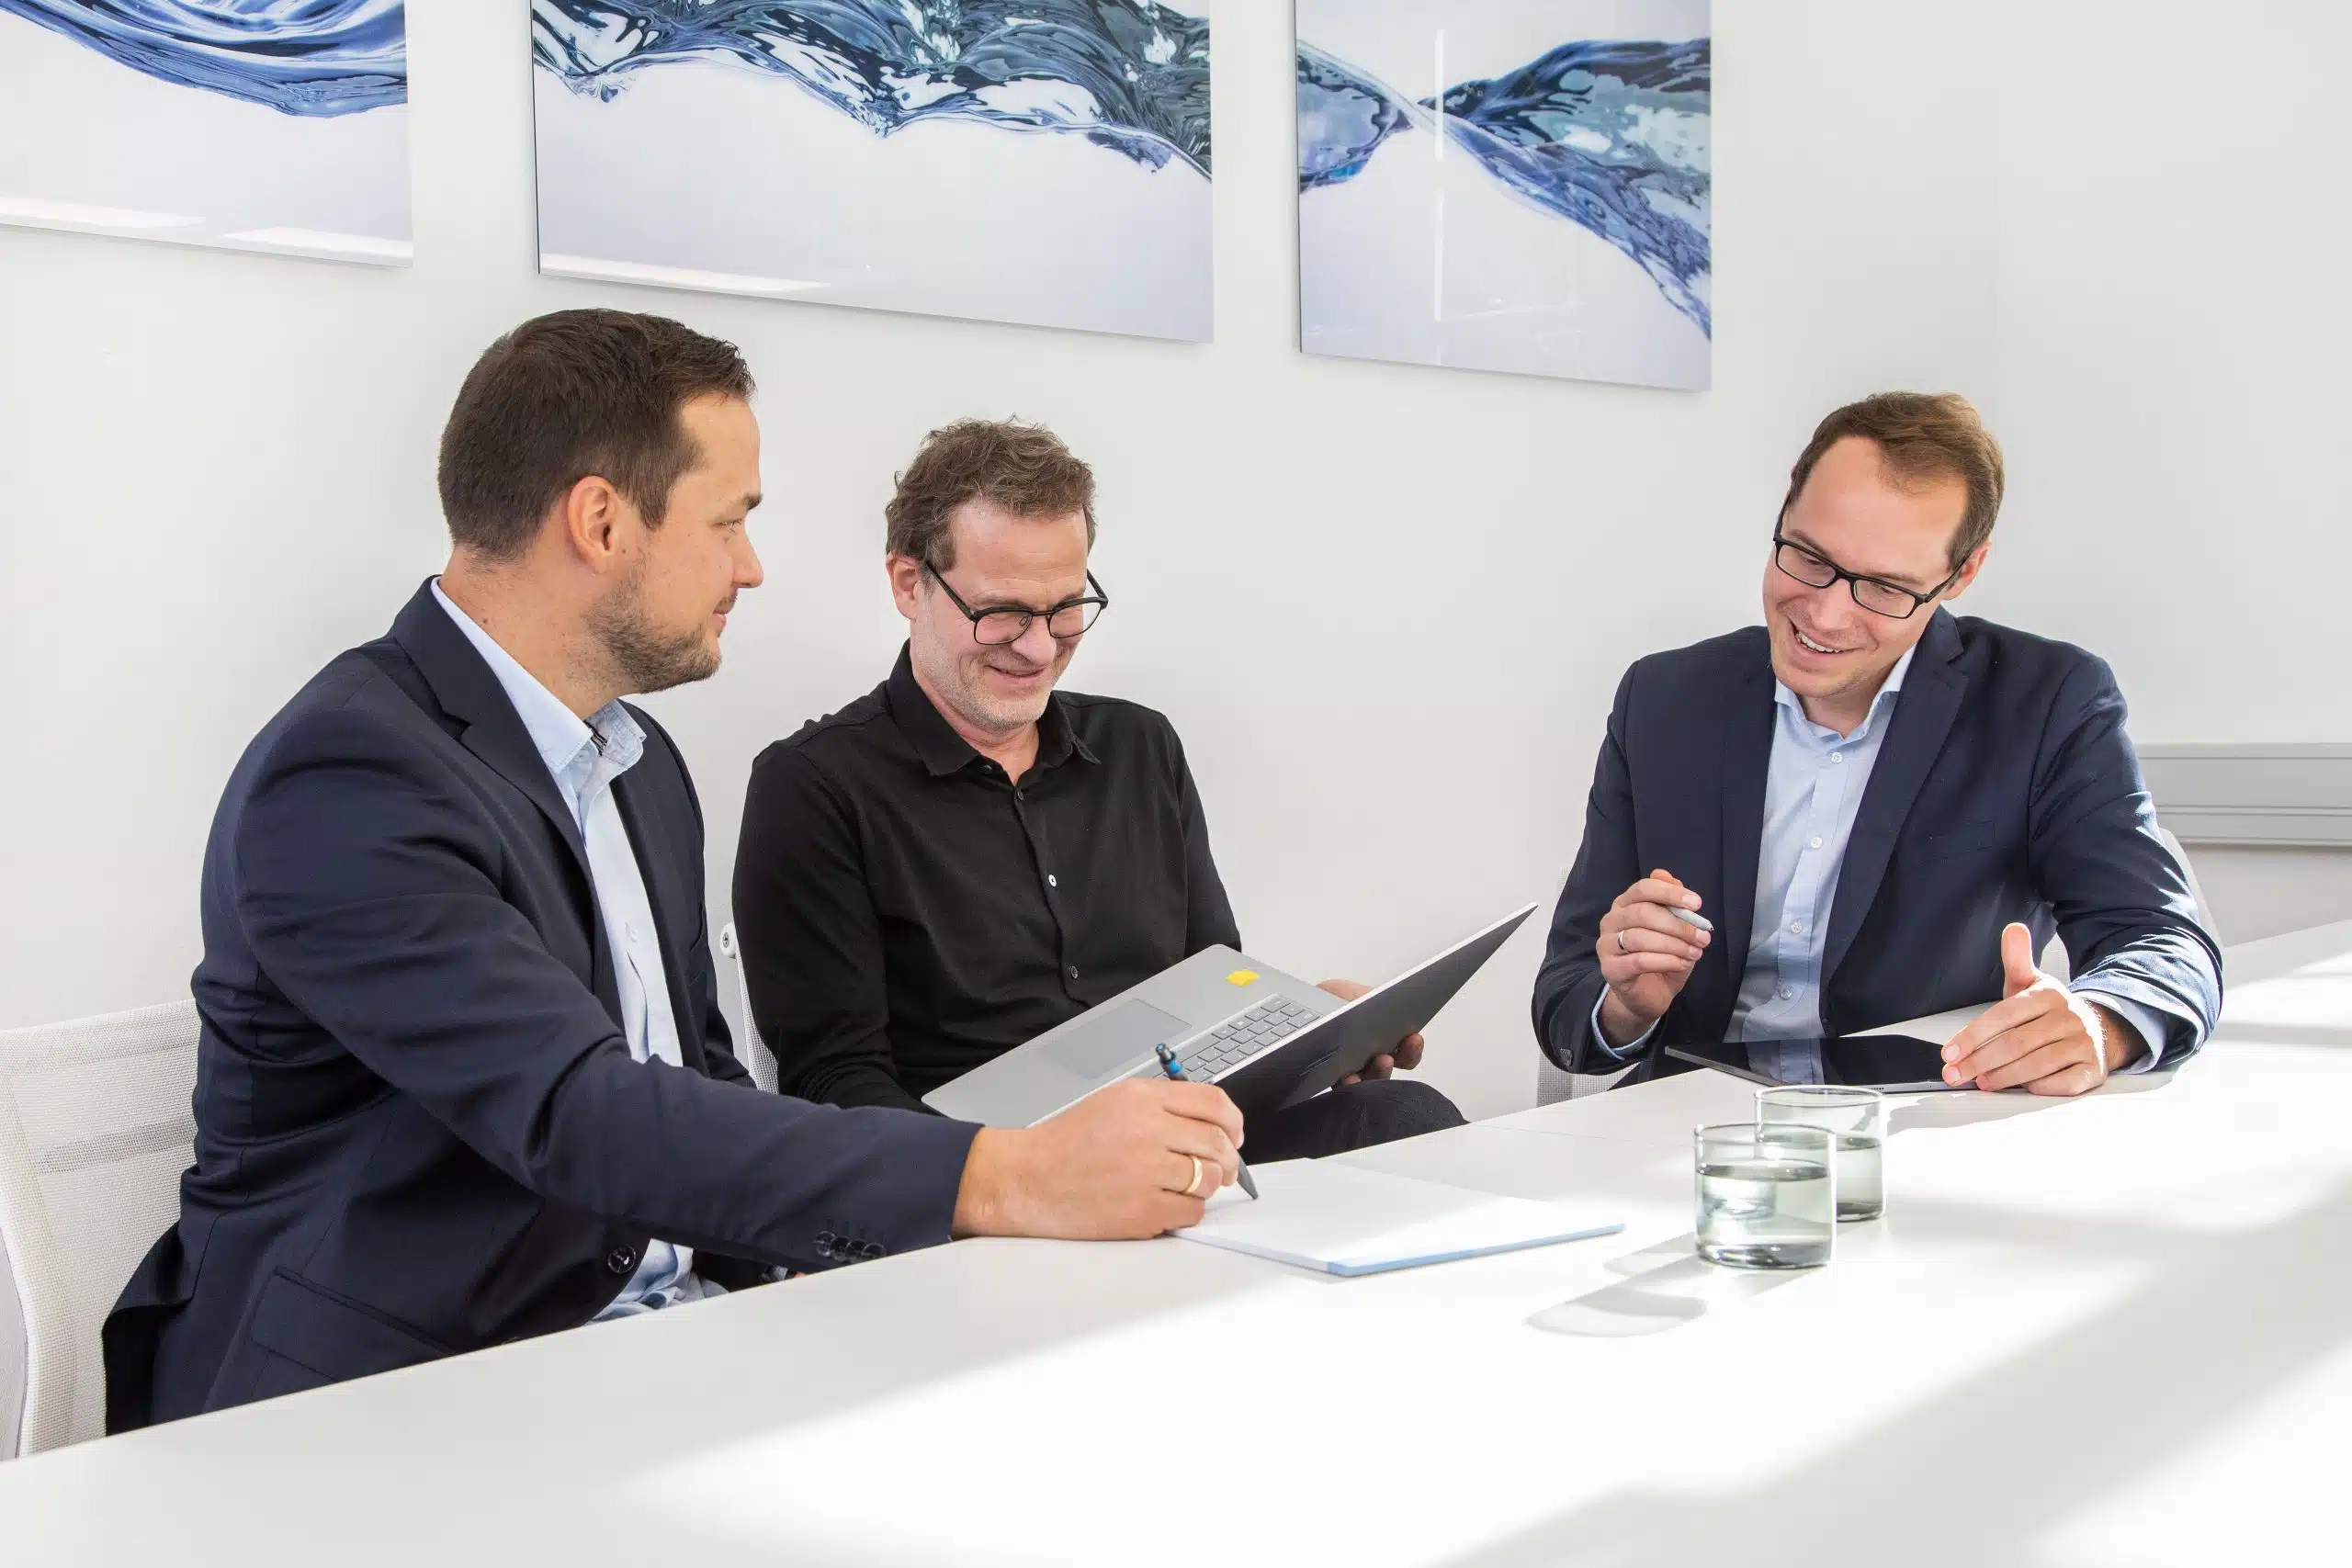 Drei Steuerberater, Frank Bott, Florian Brauers und Robert Kopiec sitzen am Konferenztisch in einem hellen Büro. Sie arbeiten am Laptop, beraten sich und lachen herzlich. Im Hintergrund ist moderne Kunst zu sehen.